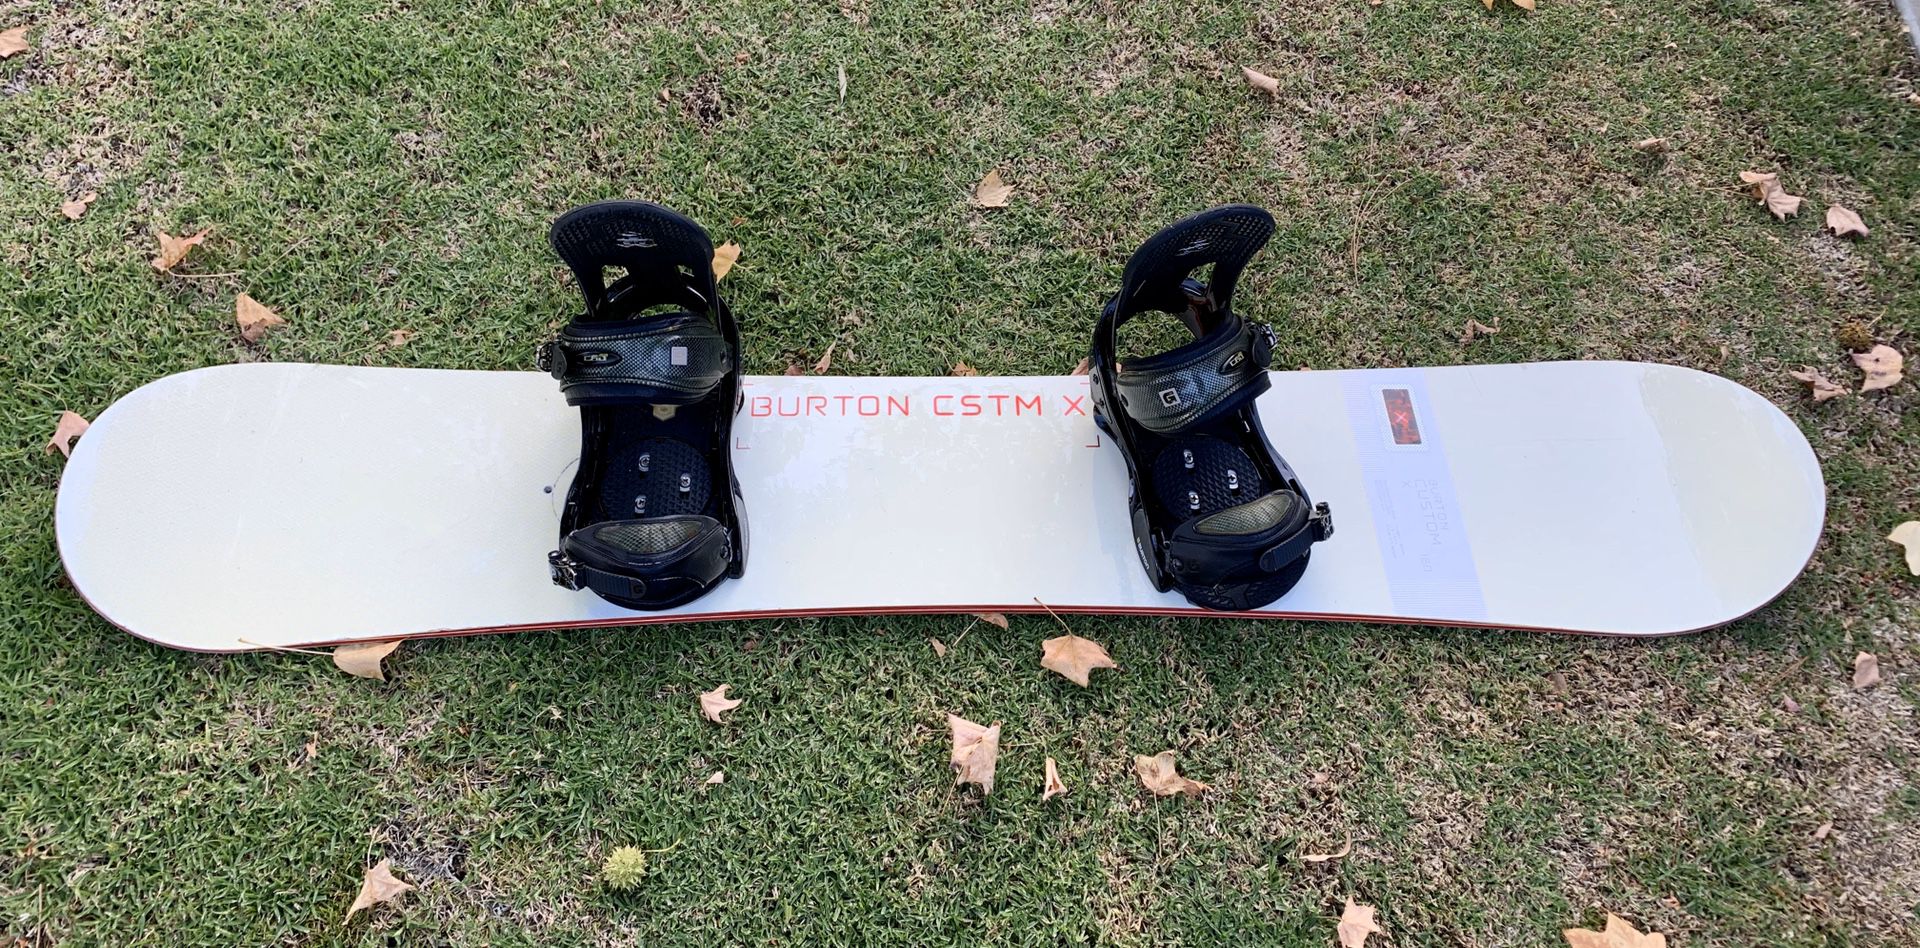 Burton Custom X snowboard with Burton bindings and board cover